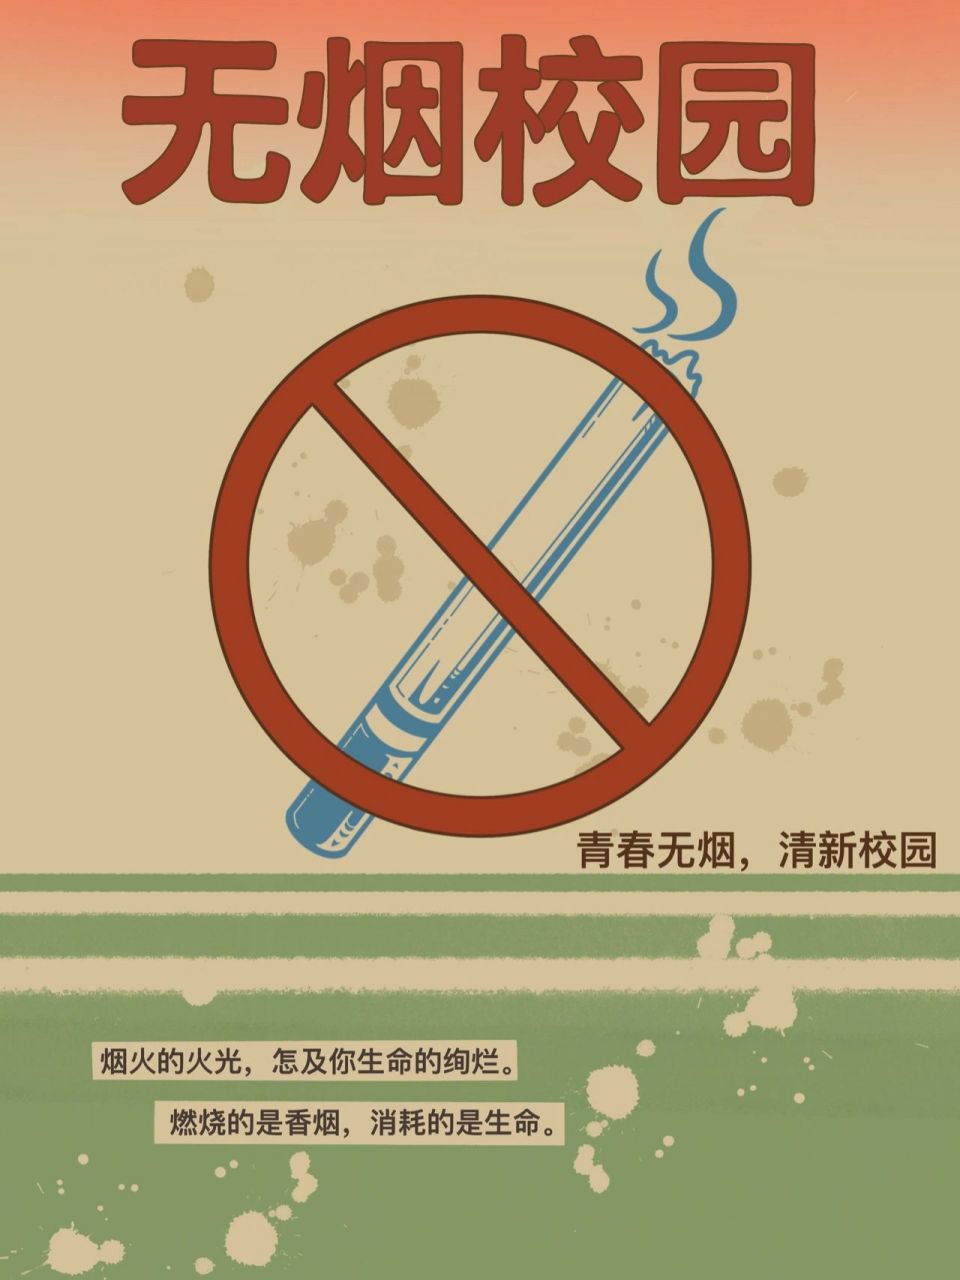 校园禁烟海报手绘图片